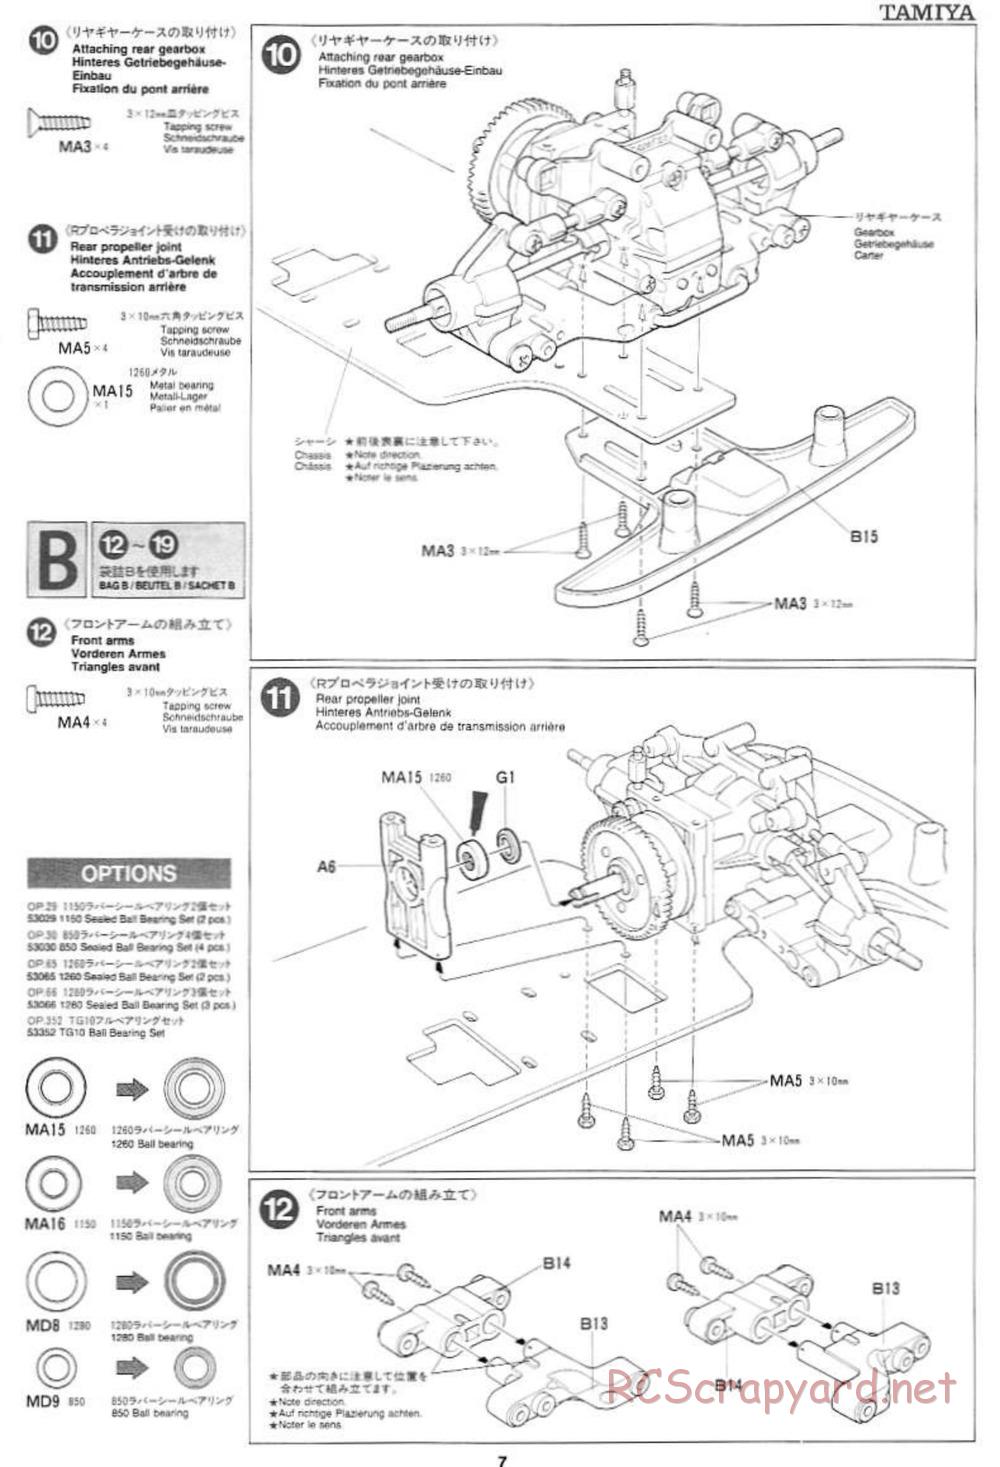 Tamiya - Mercedes CLK GTR Team Sportswear - TG10 Mk.1 Chassis - Manual - Page 7